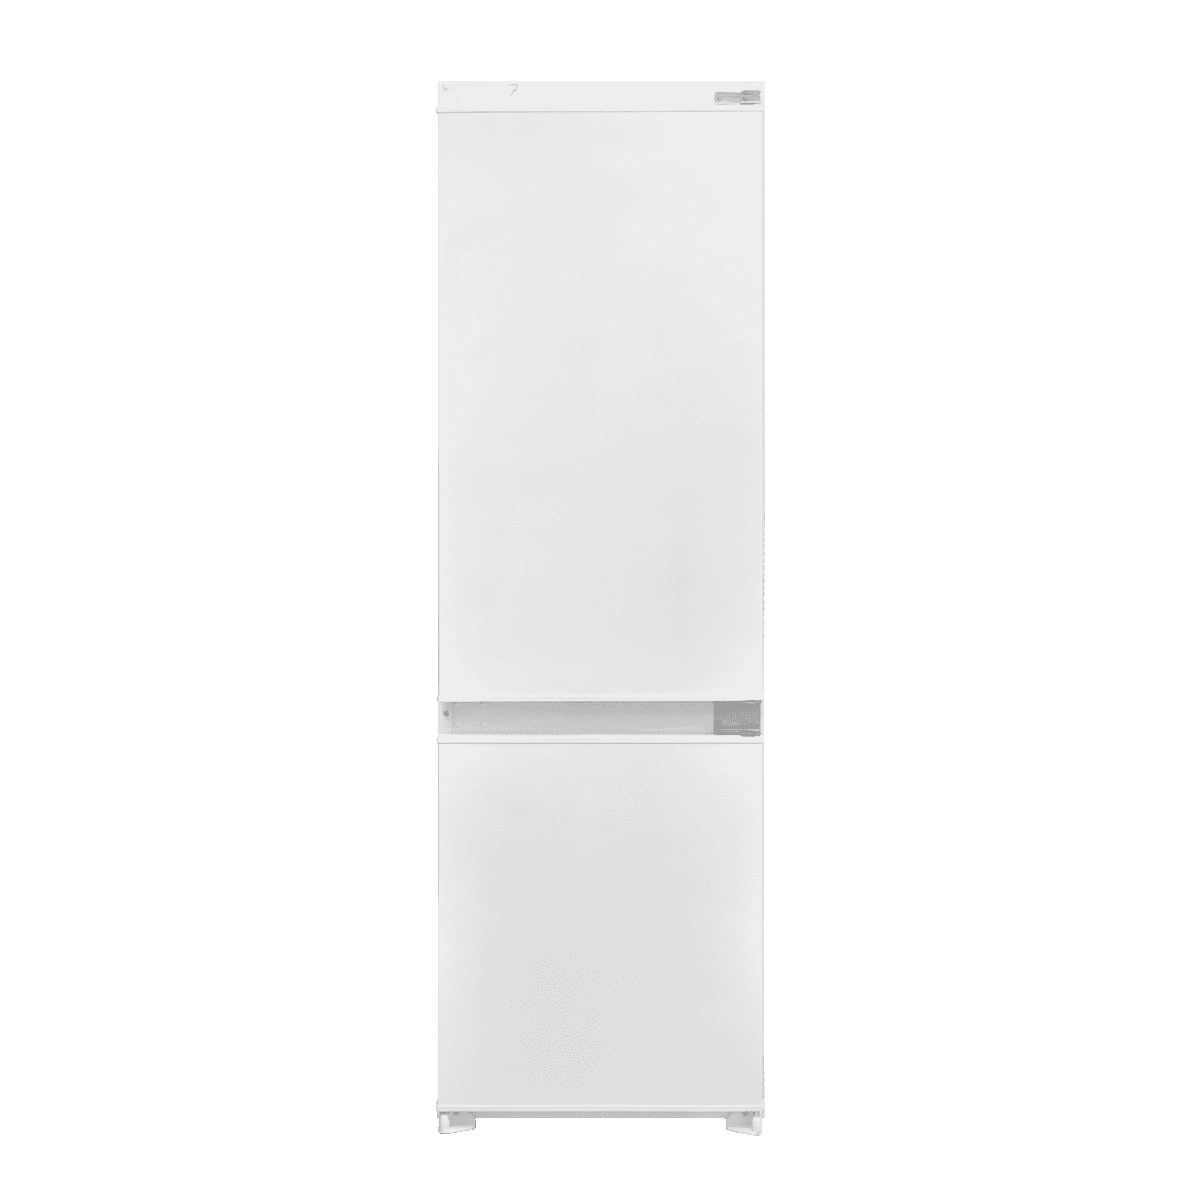 VOX IKK 3410 E Ugradni kombinovani frižider, 181l/70l, 217kWh, Beli